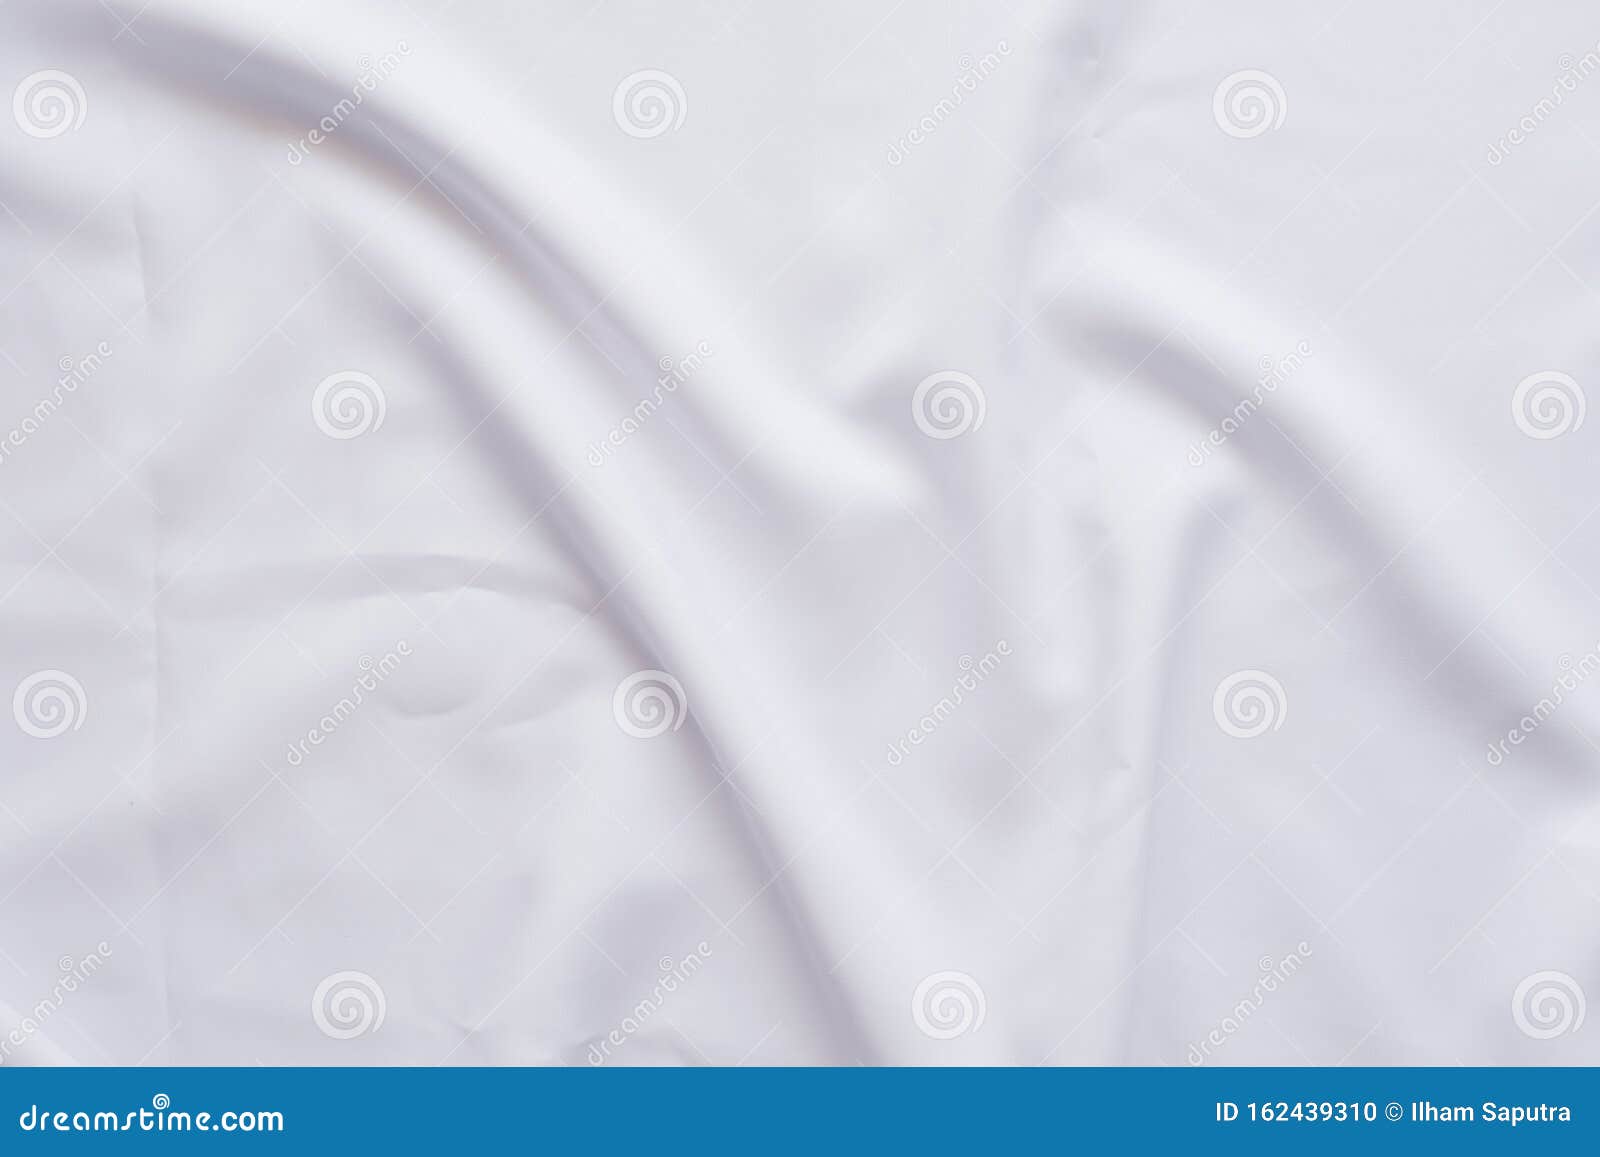 软波缠结的白布背景库存照片 图片包括有丁香 材料 减速火箭 背包 曲线 抽象 衣物